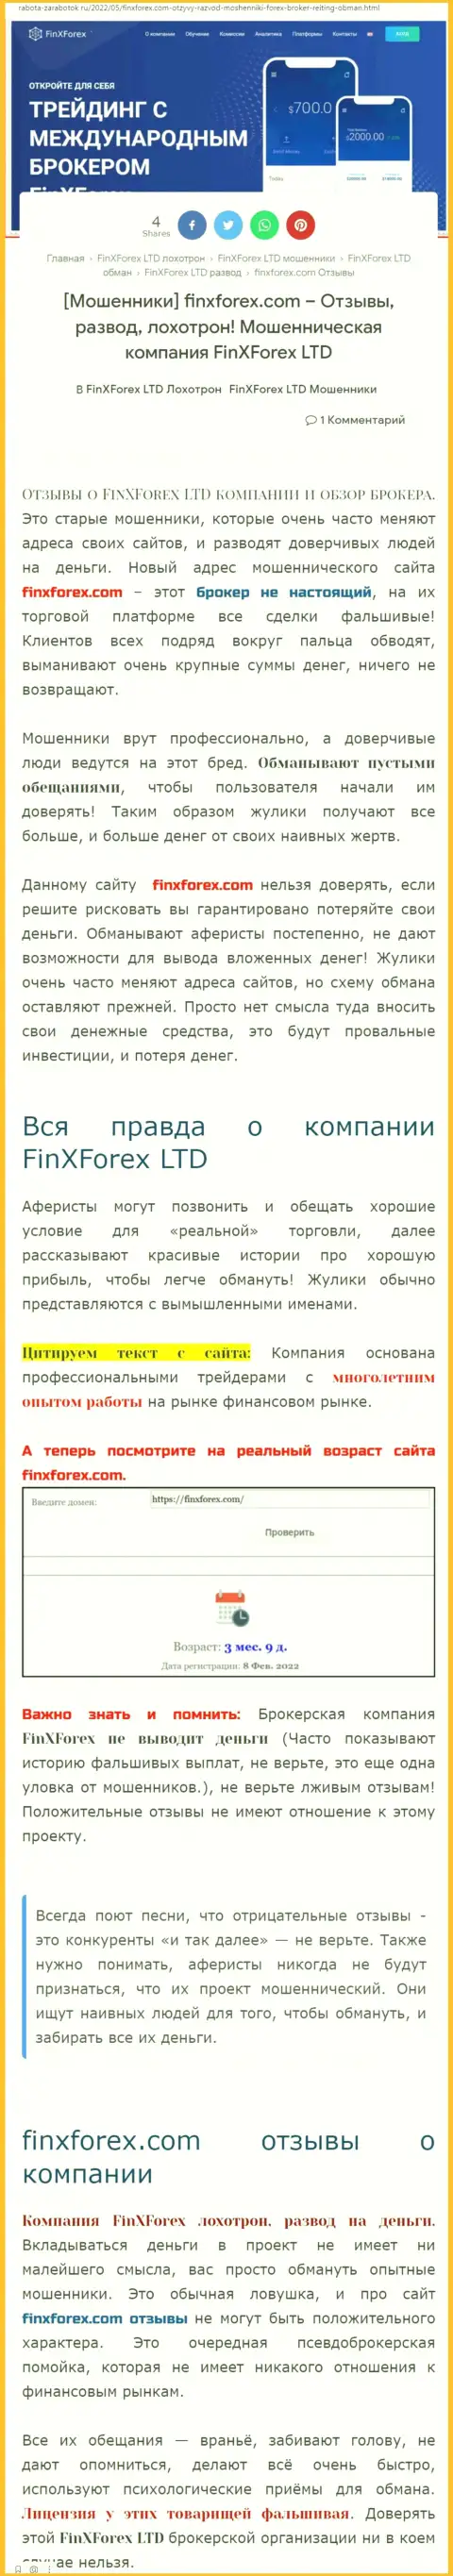 Автор обзорной статьи о ФинХФорекс заявляет, что в организации FinXForex разводят